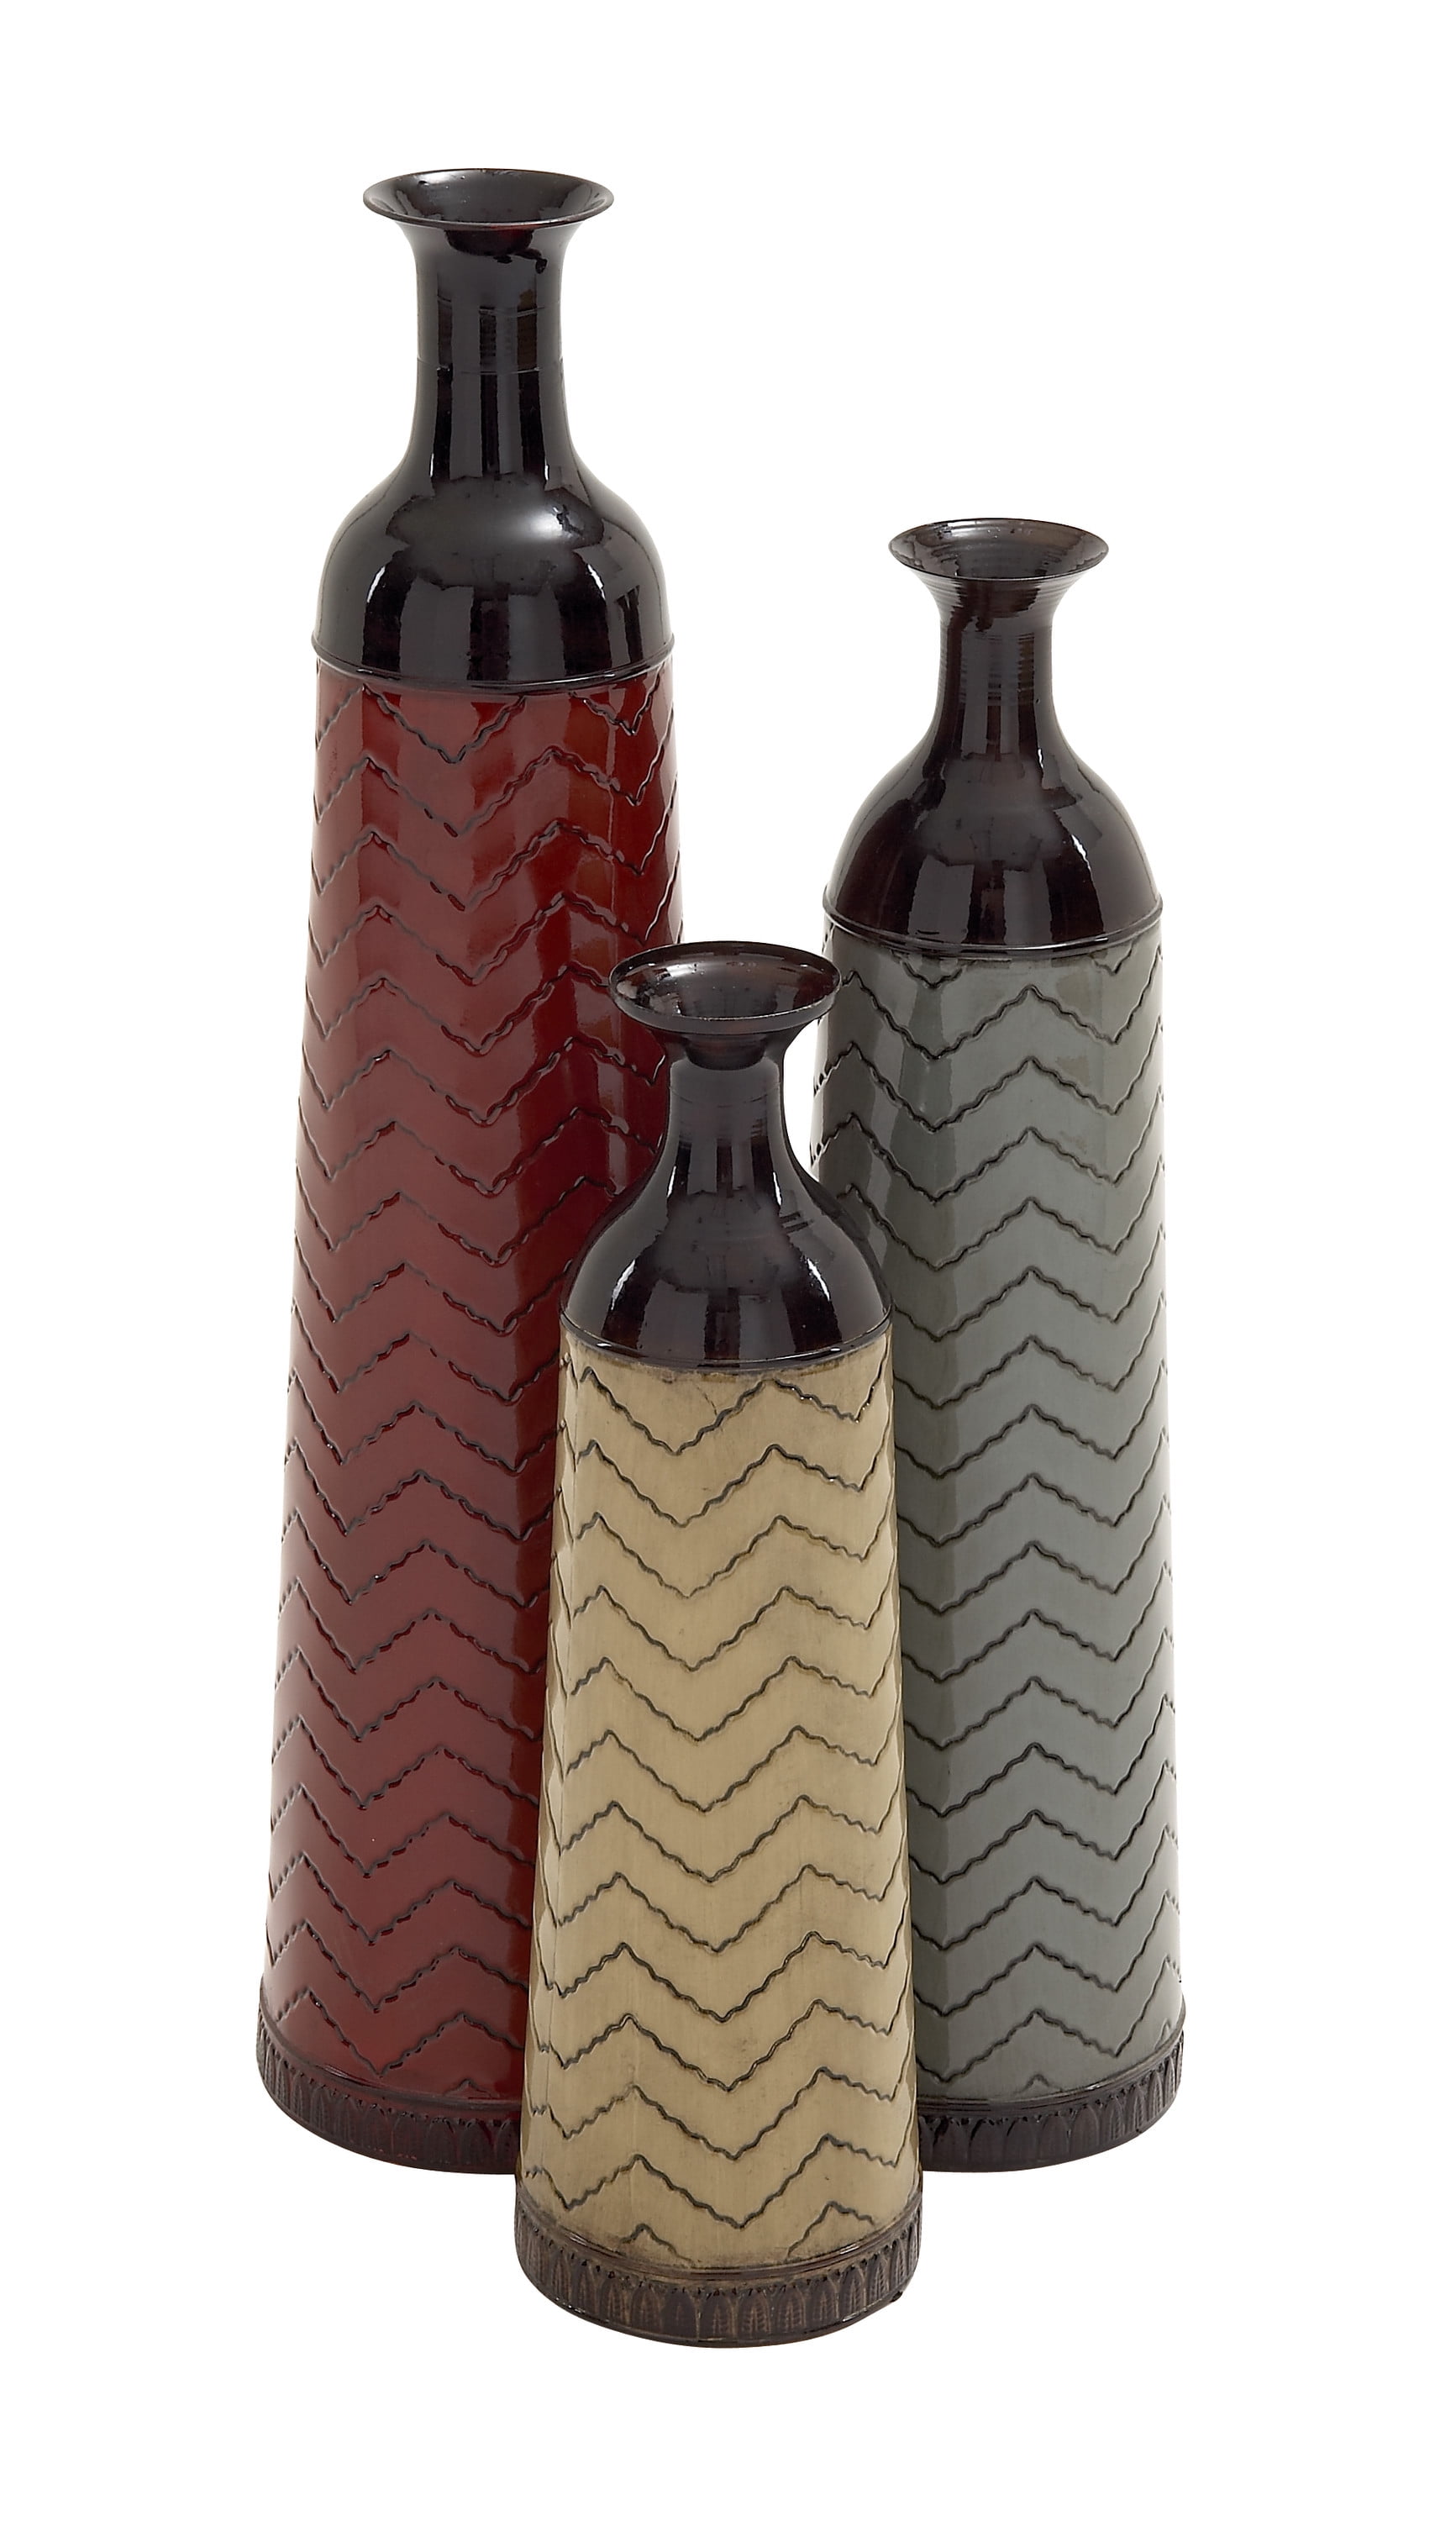 Large Rustic Set/3 Hammered Brown Metal Cylinder Traditional Floor Vases  Decor